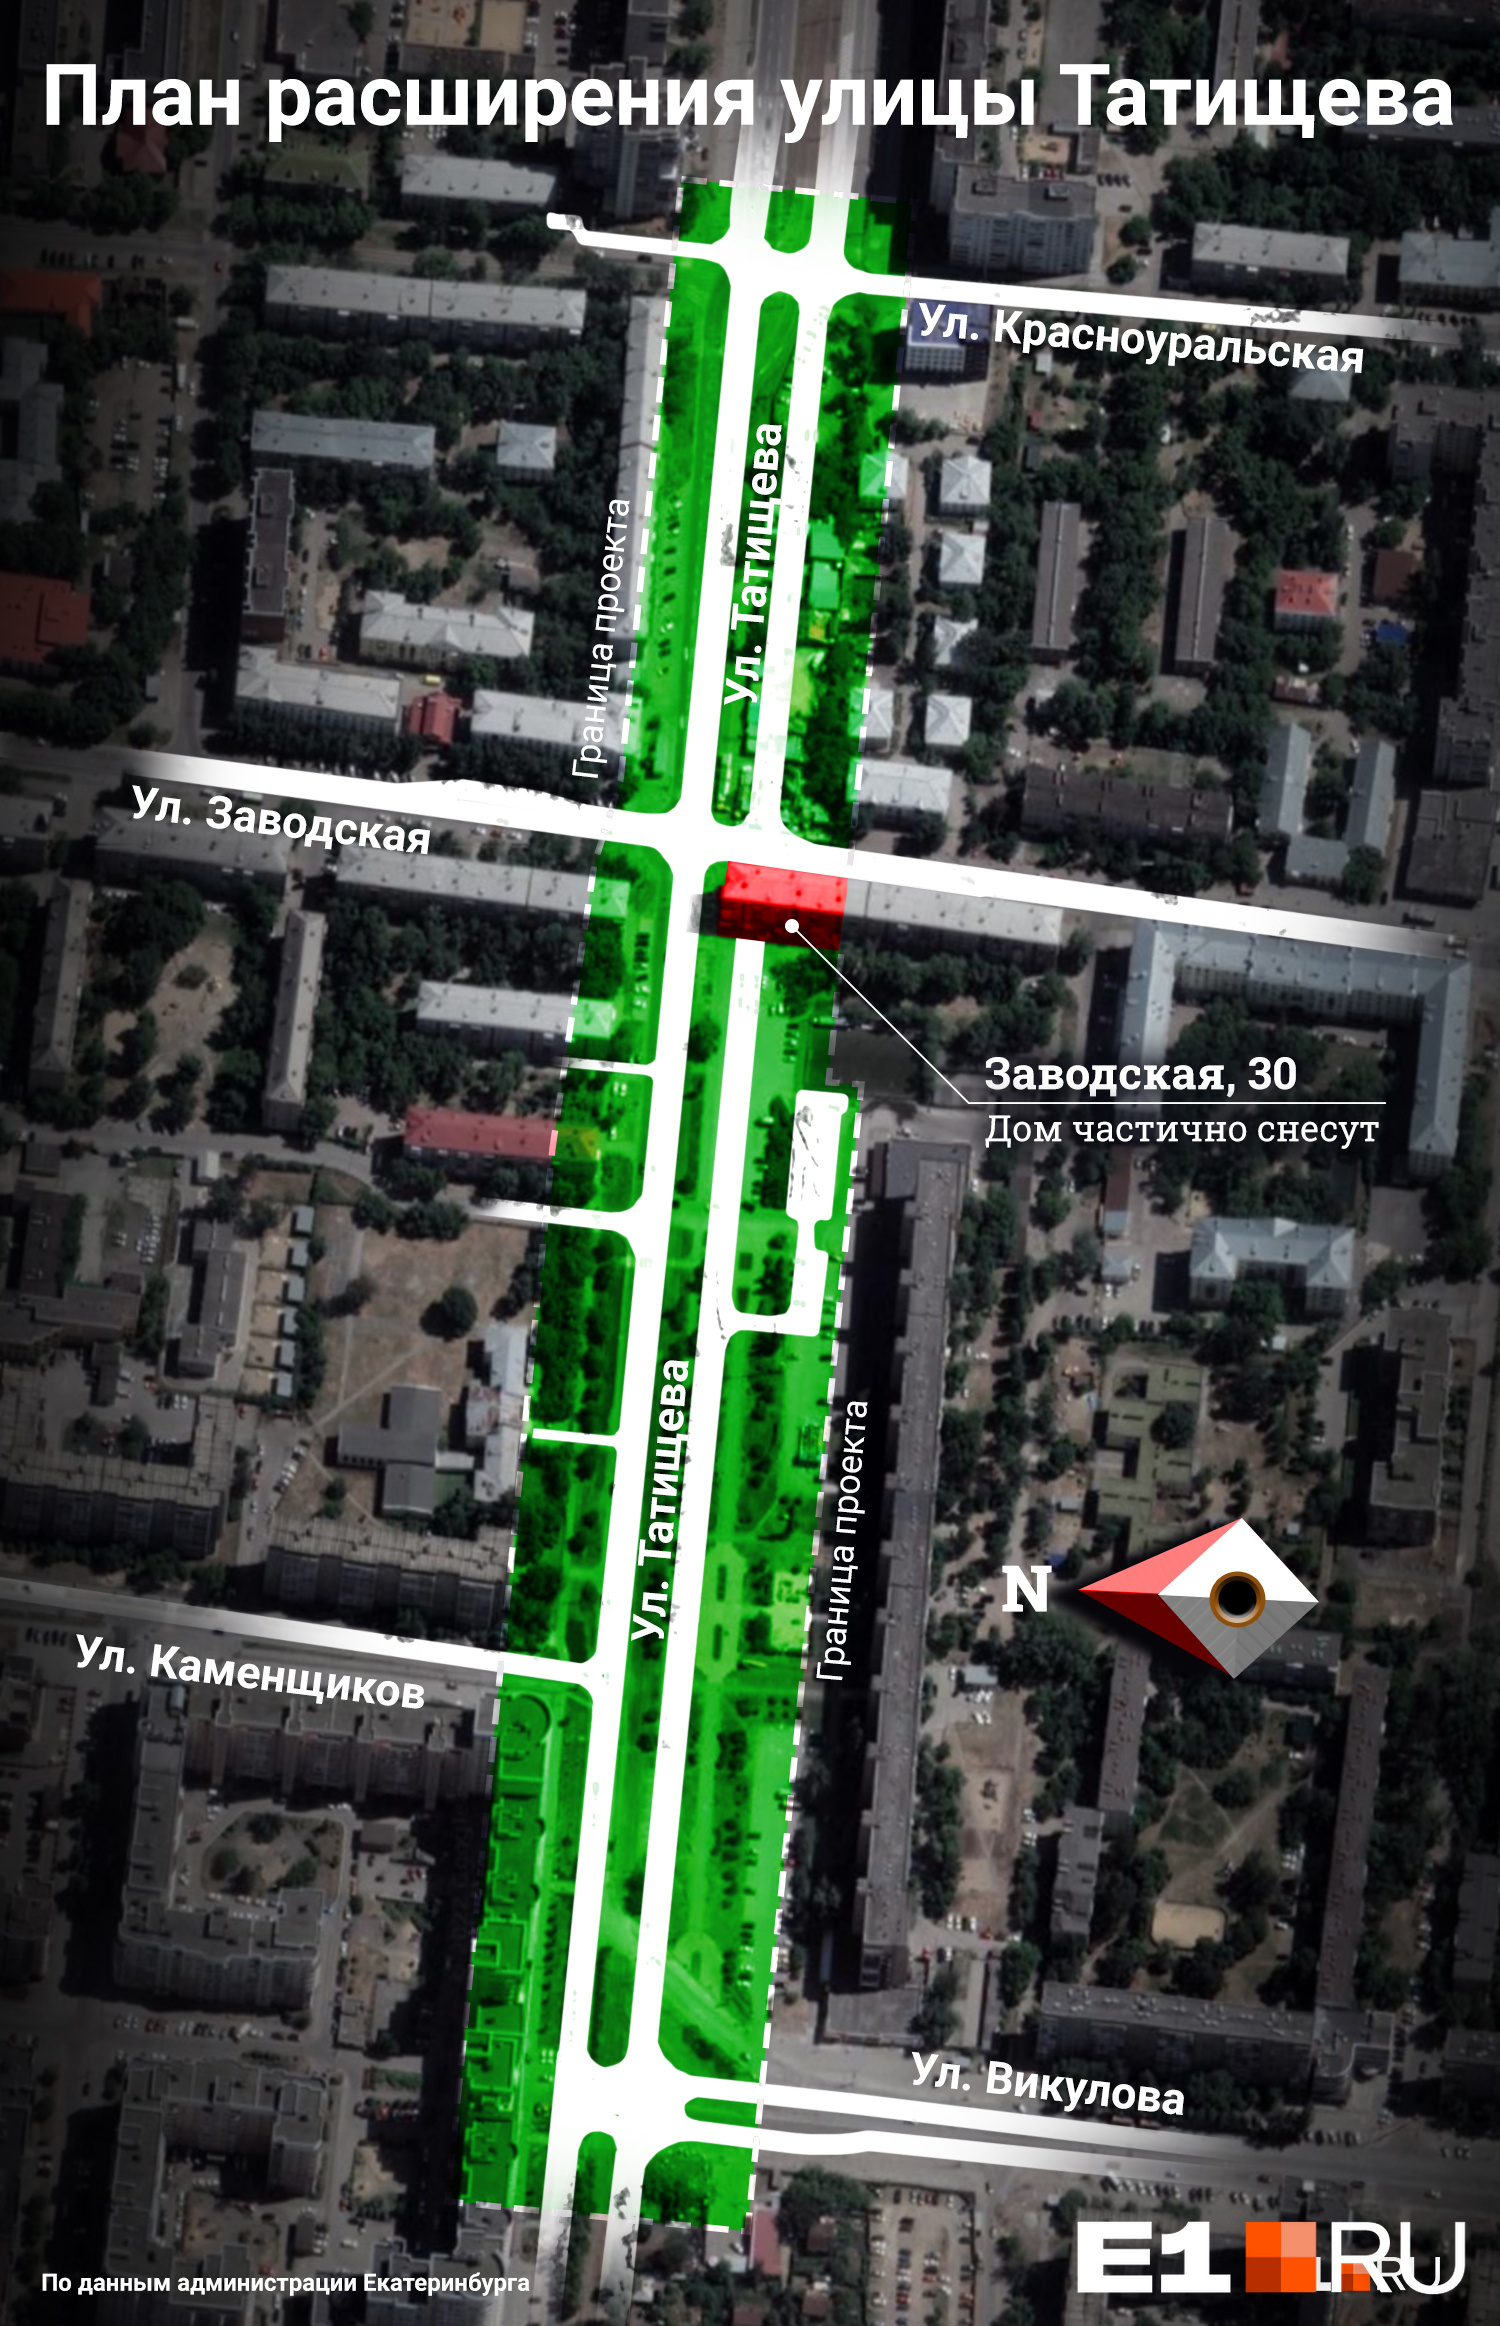 Схема расширения улицы Татищева, утвержденная в 2019 году